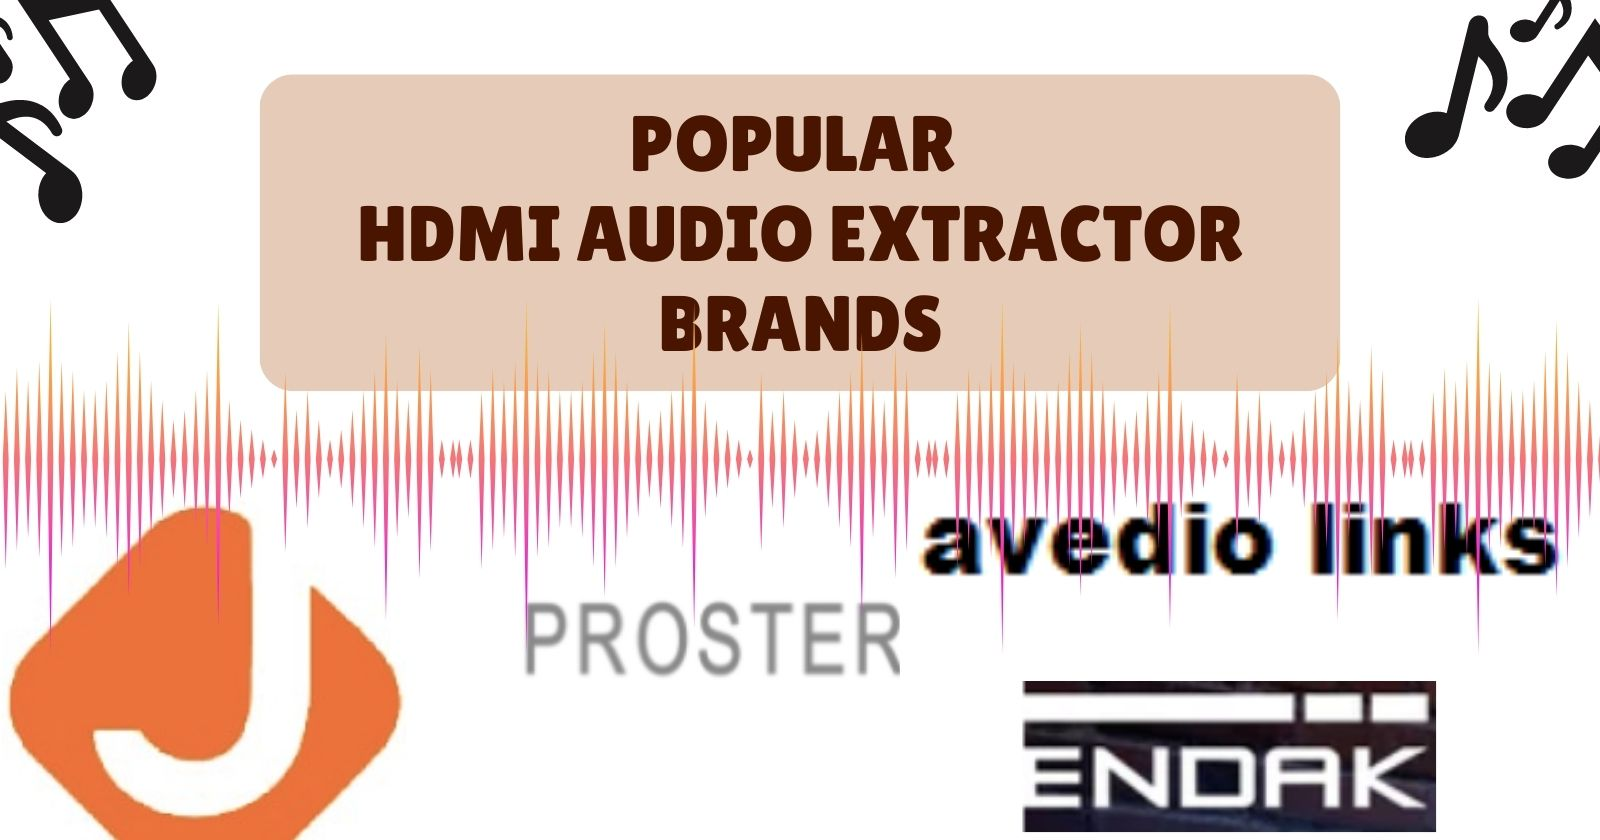 Popular HDMI Audio Extractor Brands